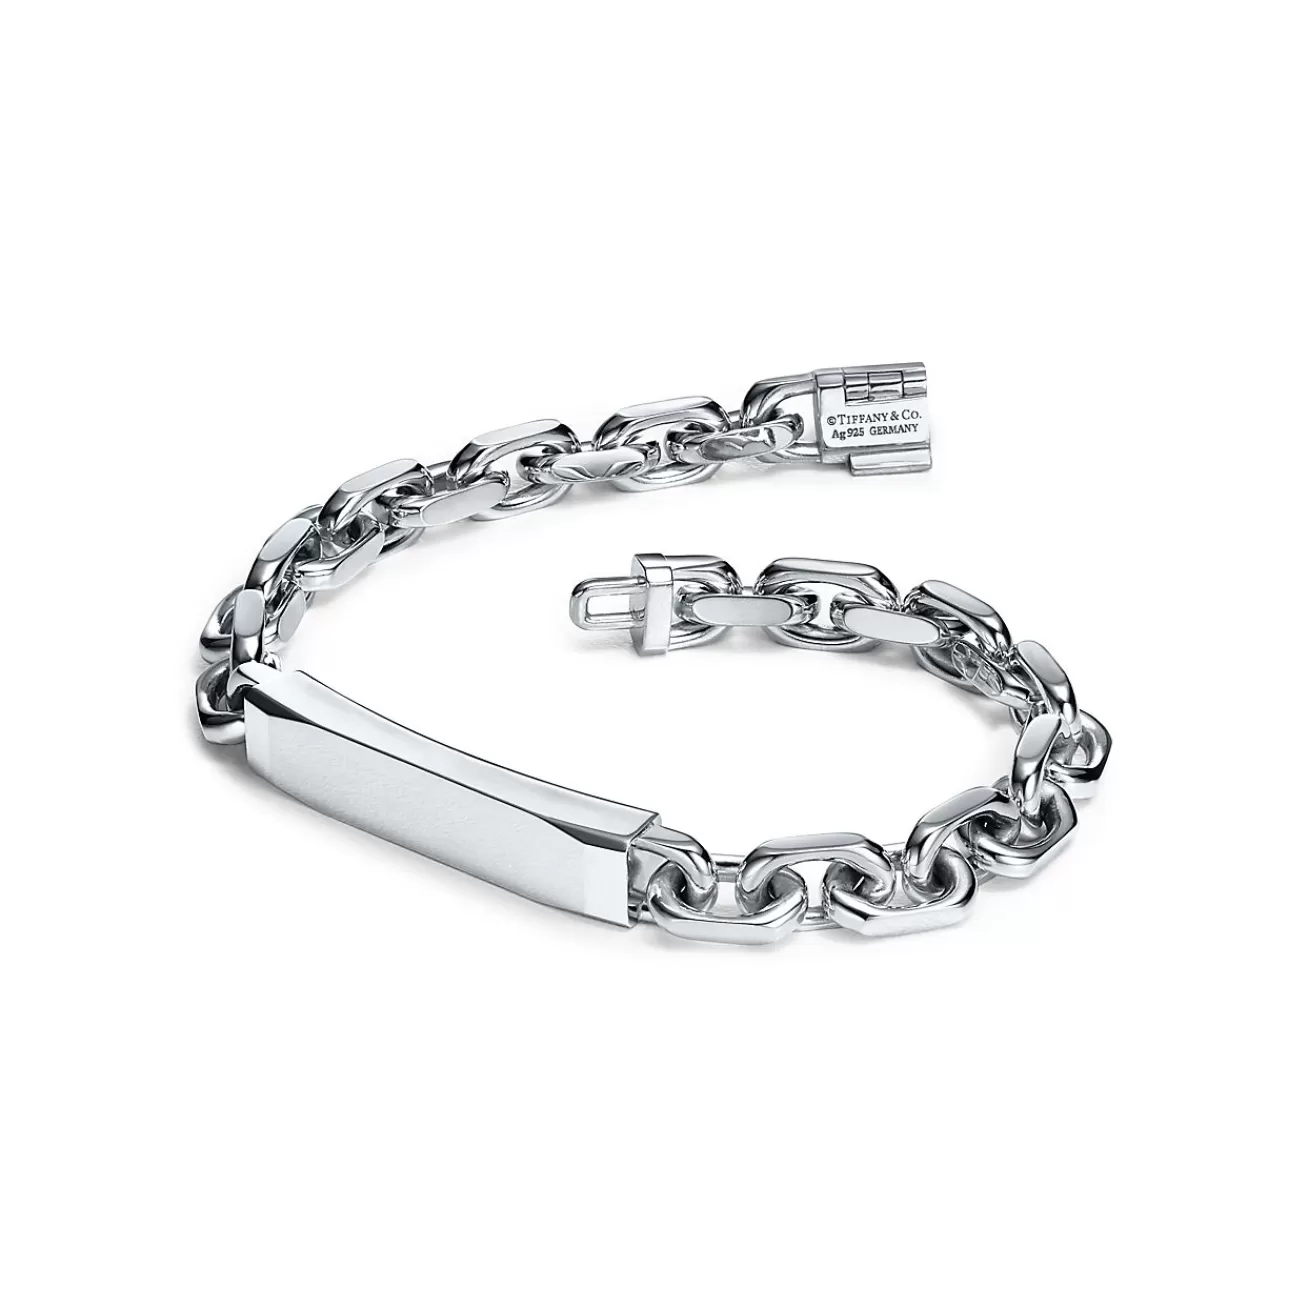 Tiffany & Co. Tiffany 1837® Makers I.D. chain bracelet in sterling silver, medium. | ^ Bracelets | Men's Jewelry